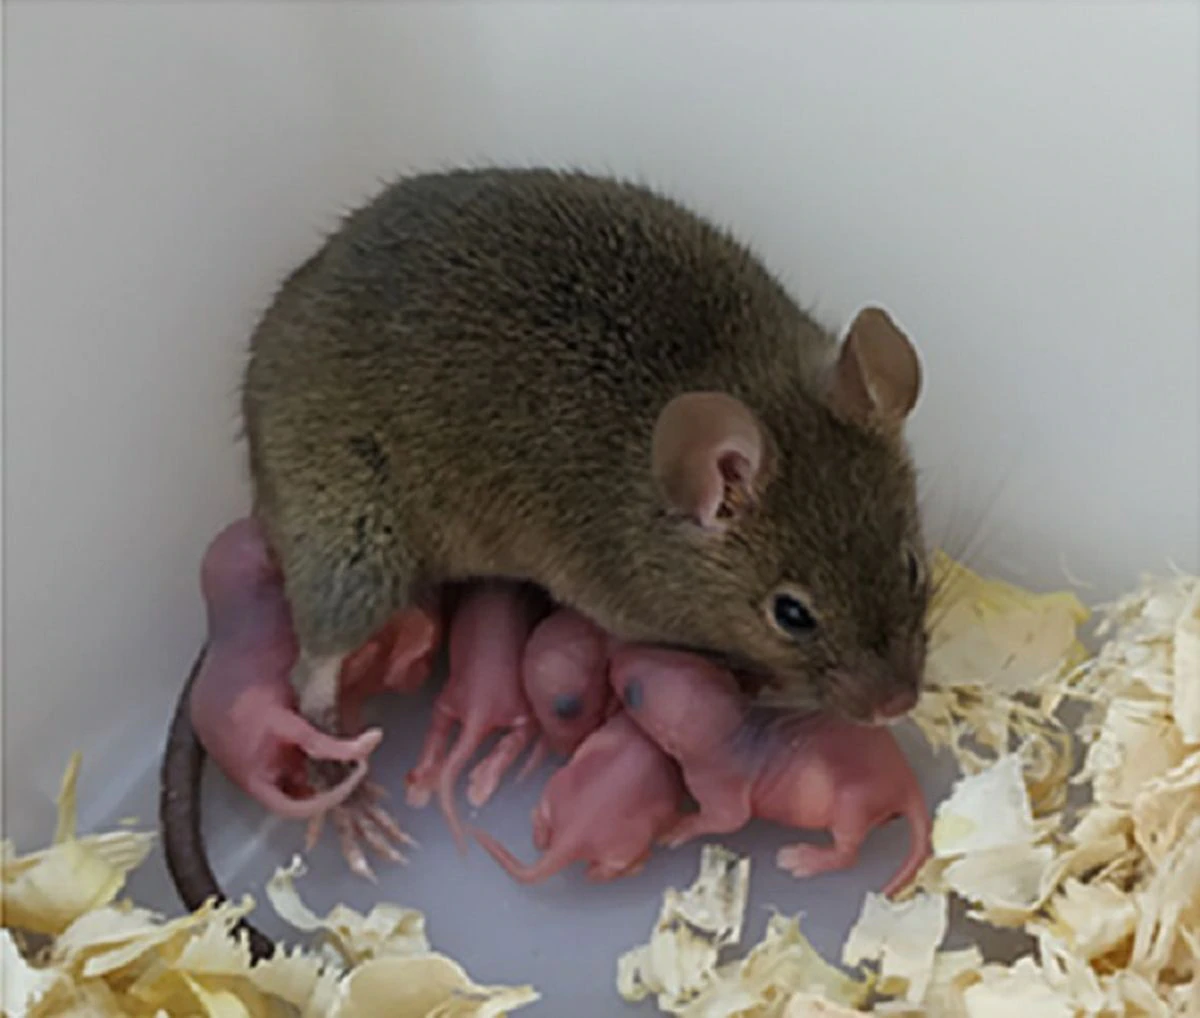 Científicos chinos consiguen que una ratona tenga hijos sin necesidad de esperma ni sexo